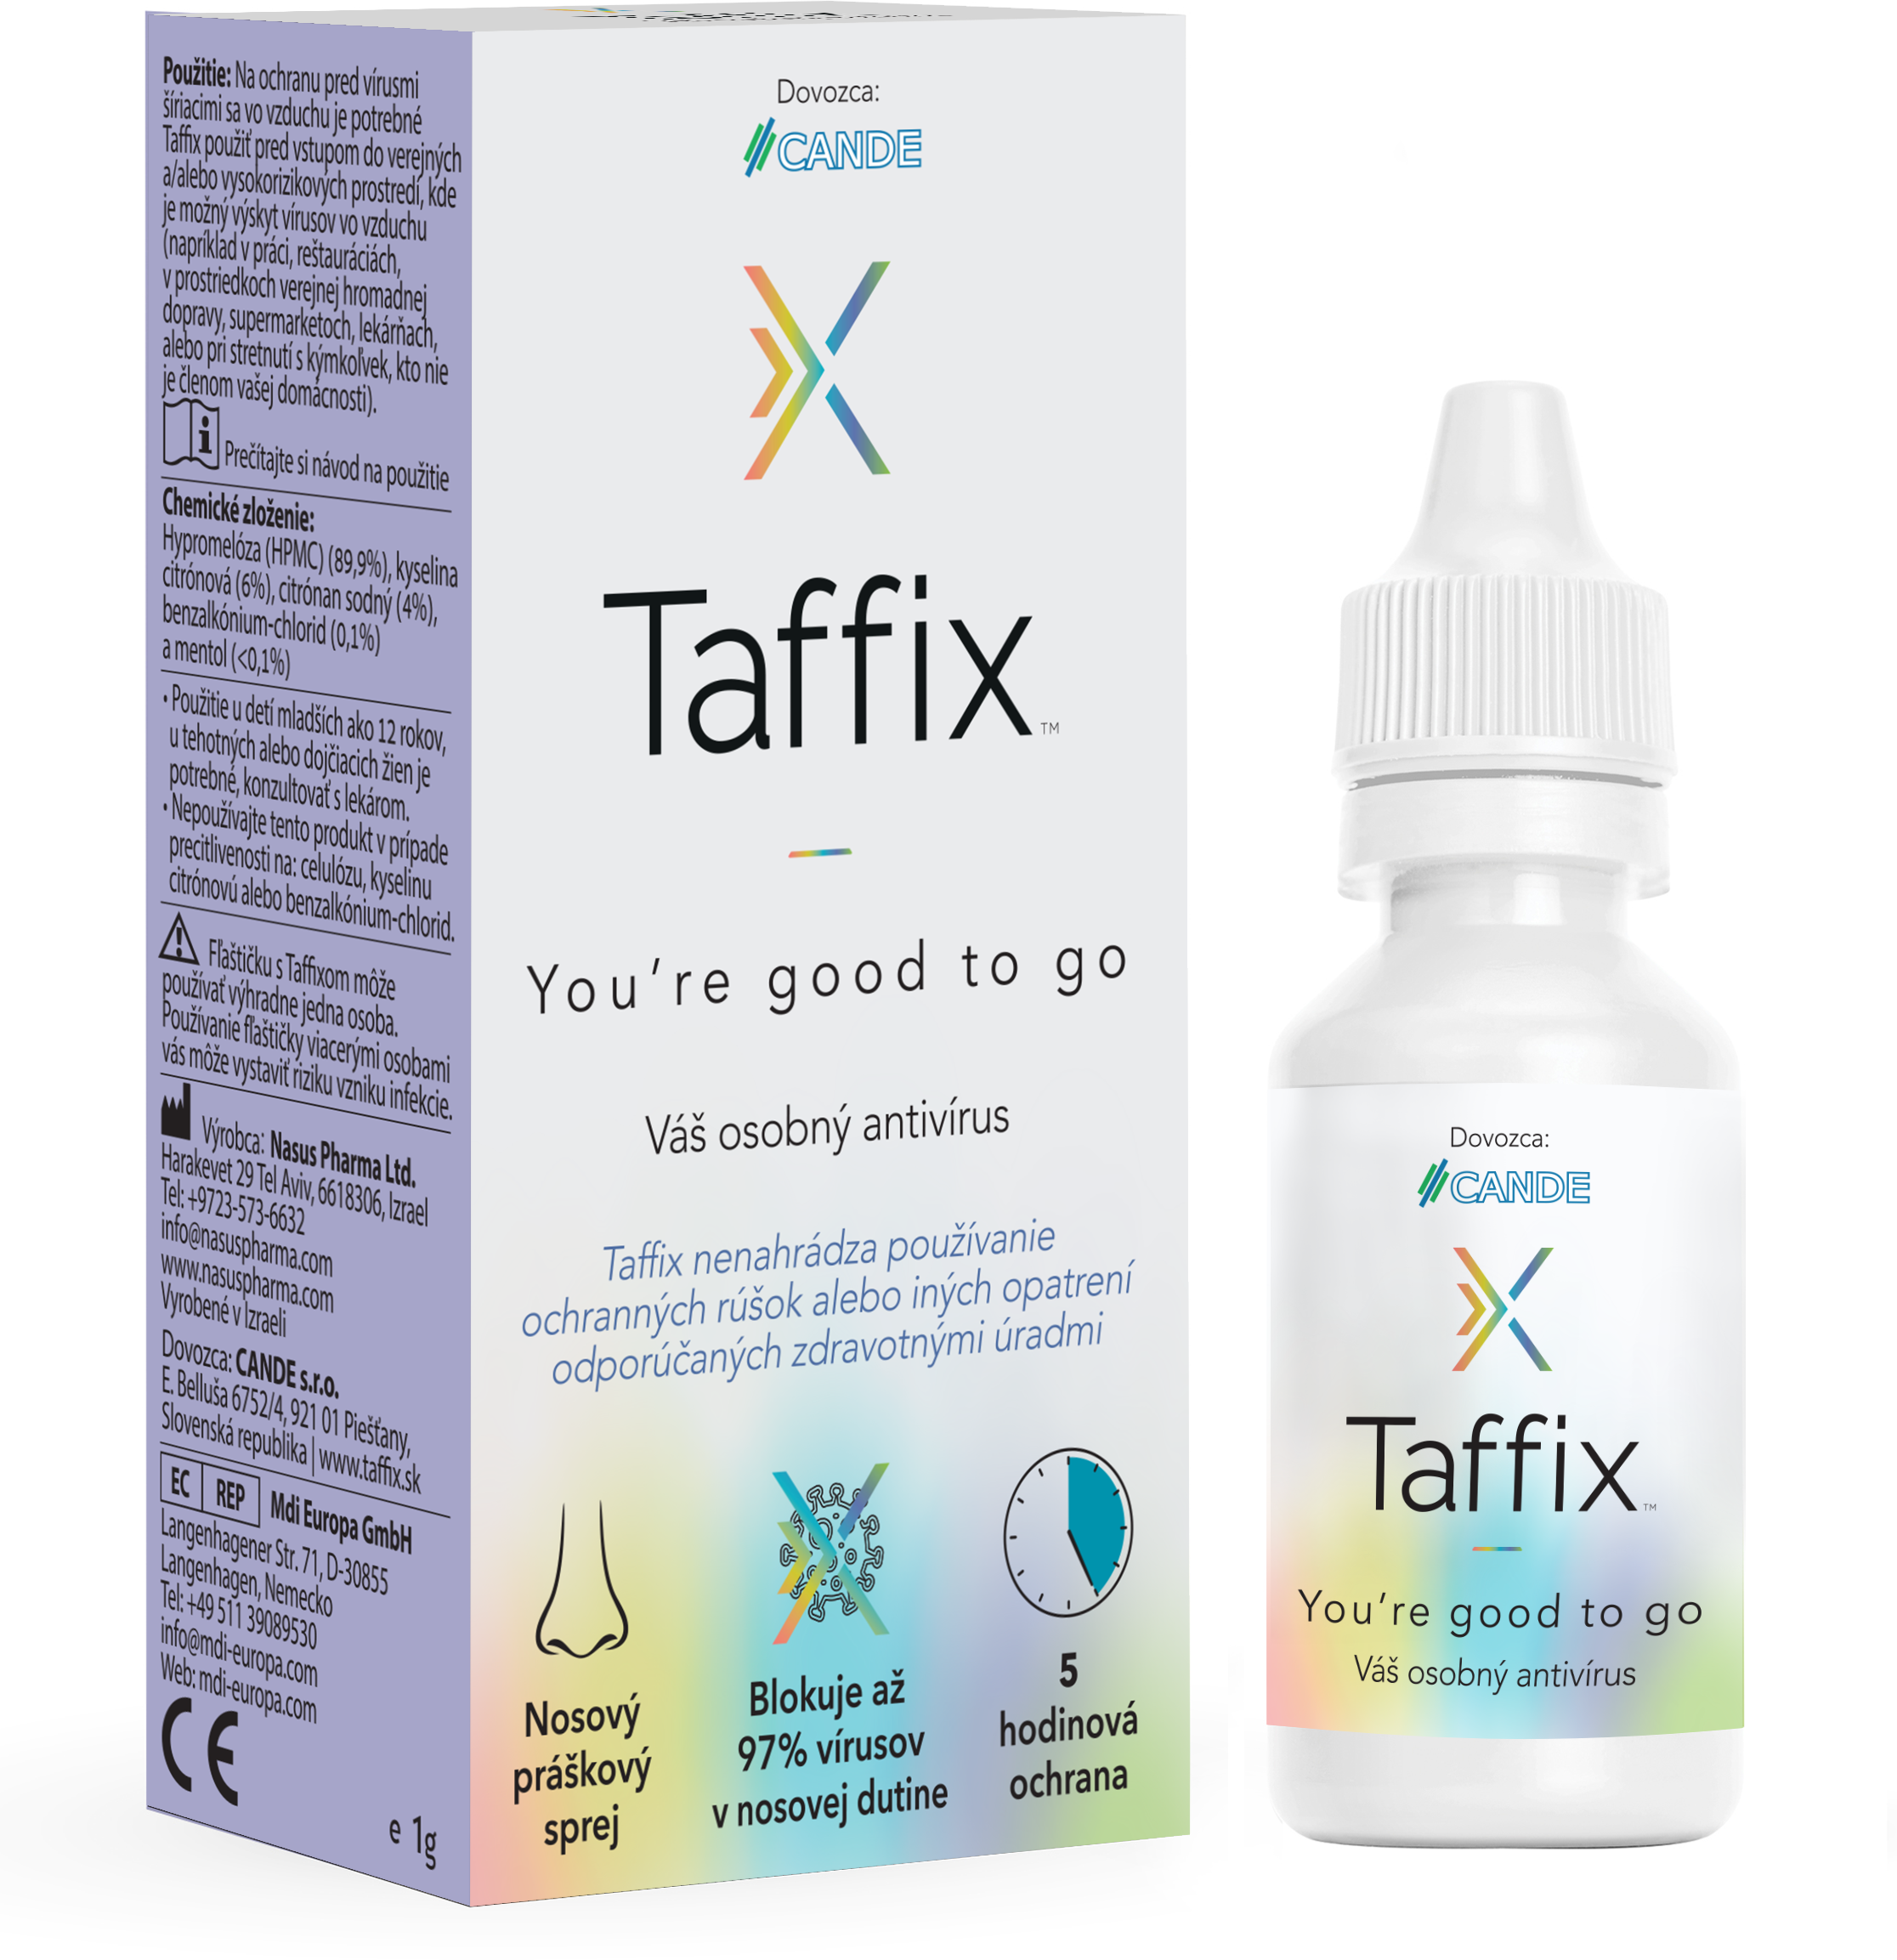 Taffix nosový práškový sprej 1 g